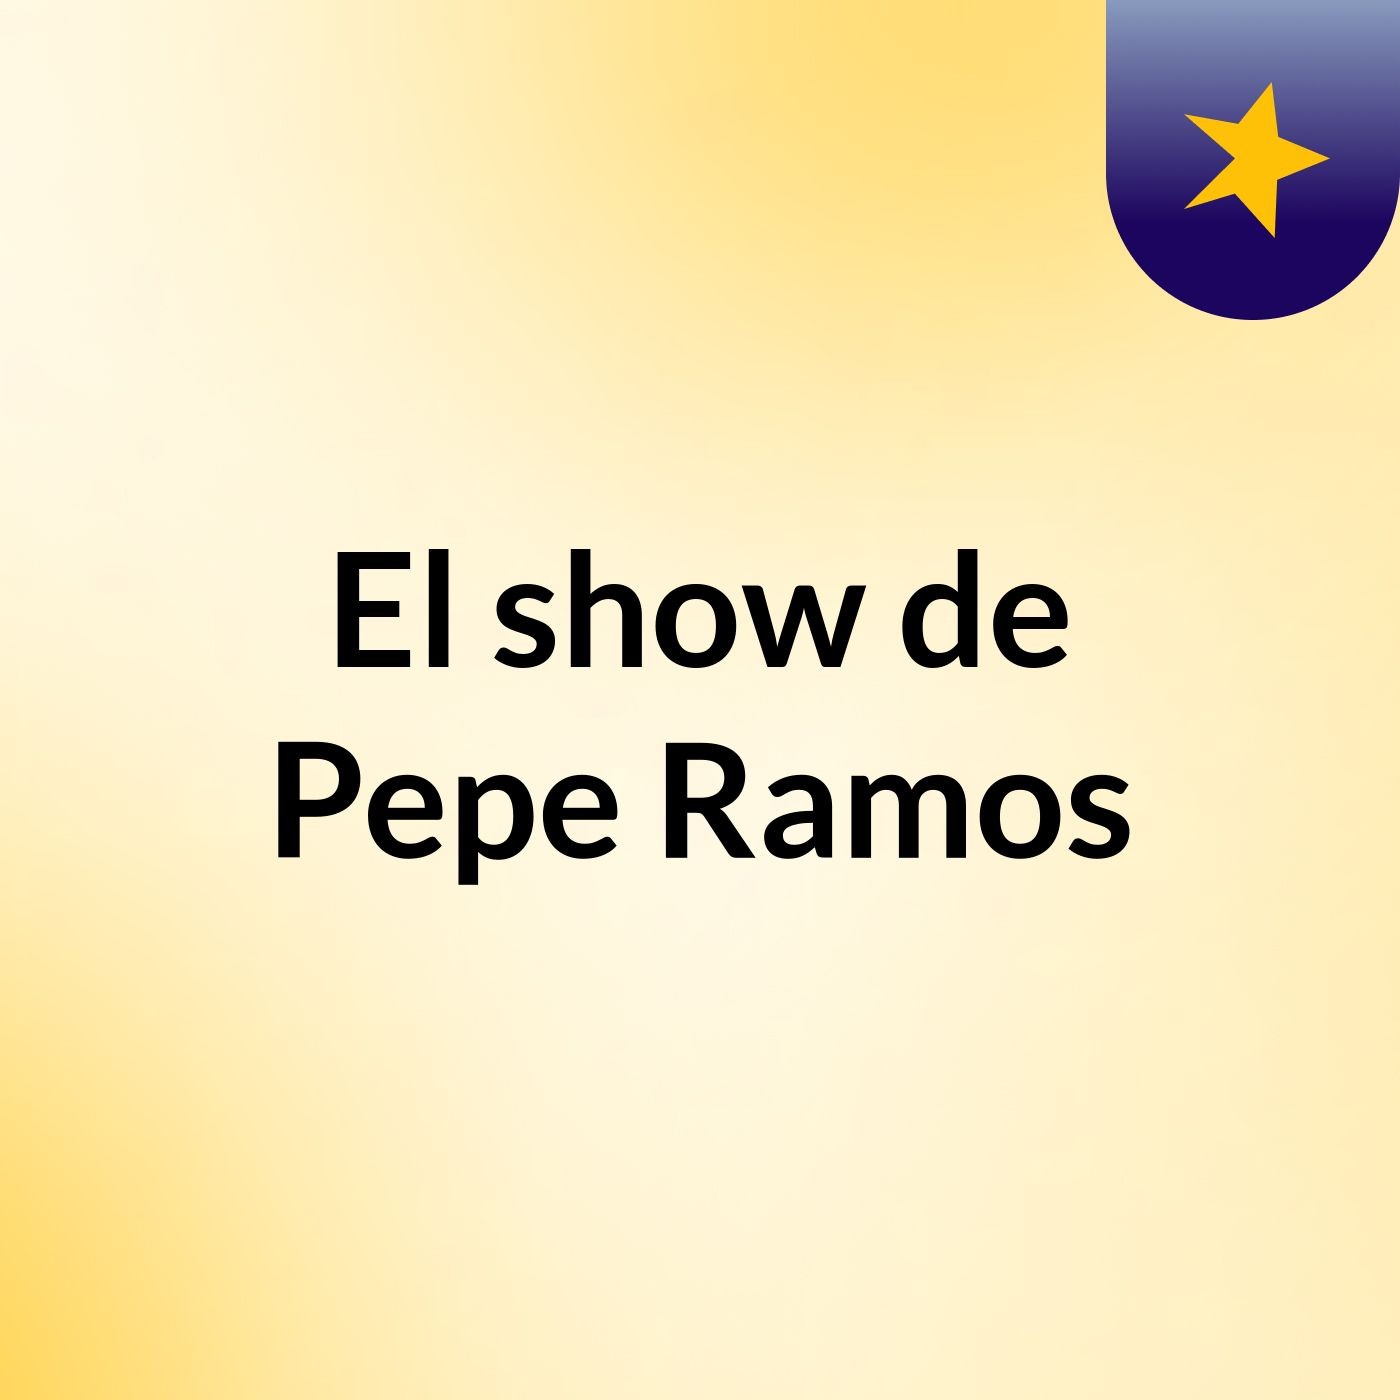 El show de Pepe Ramos